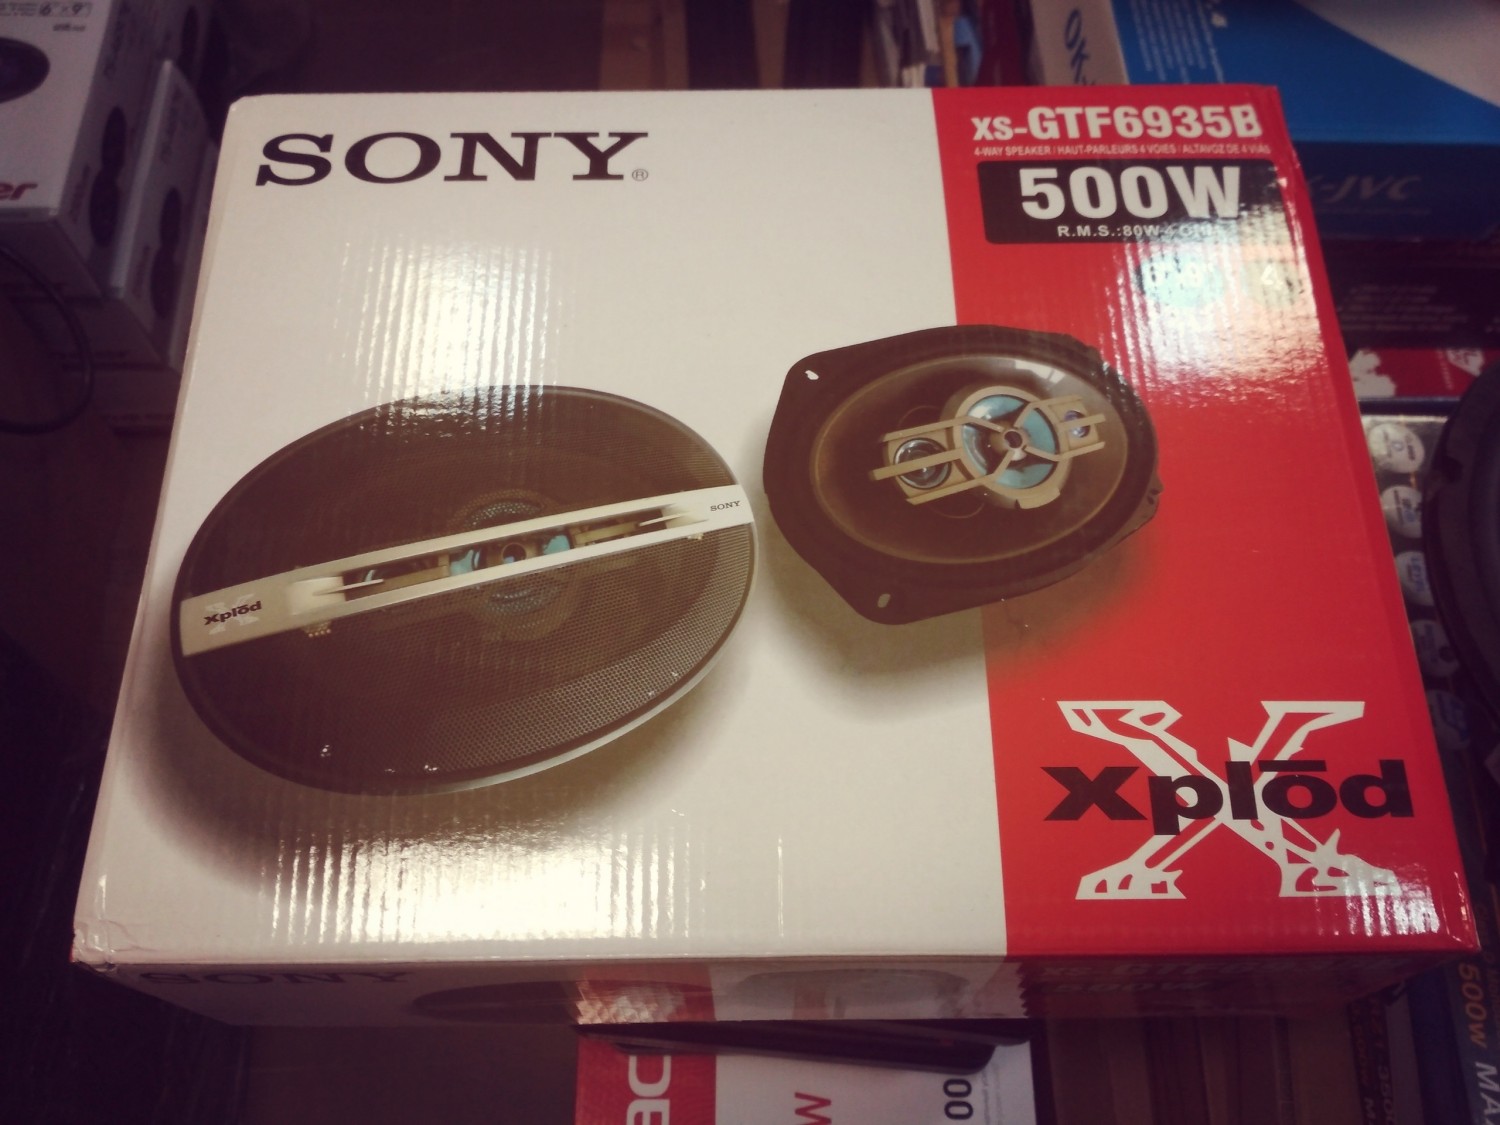 Sony XS-GTF6935B